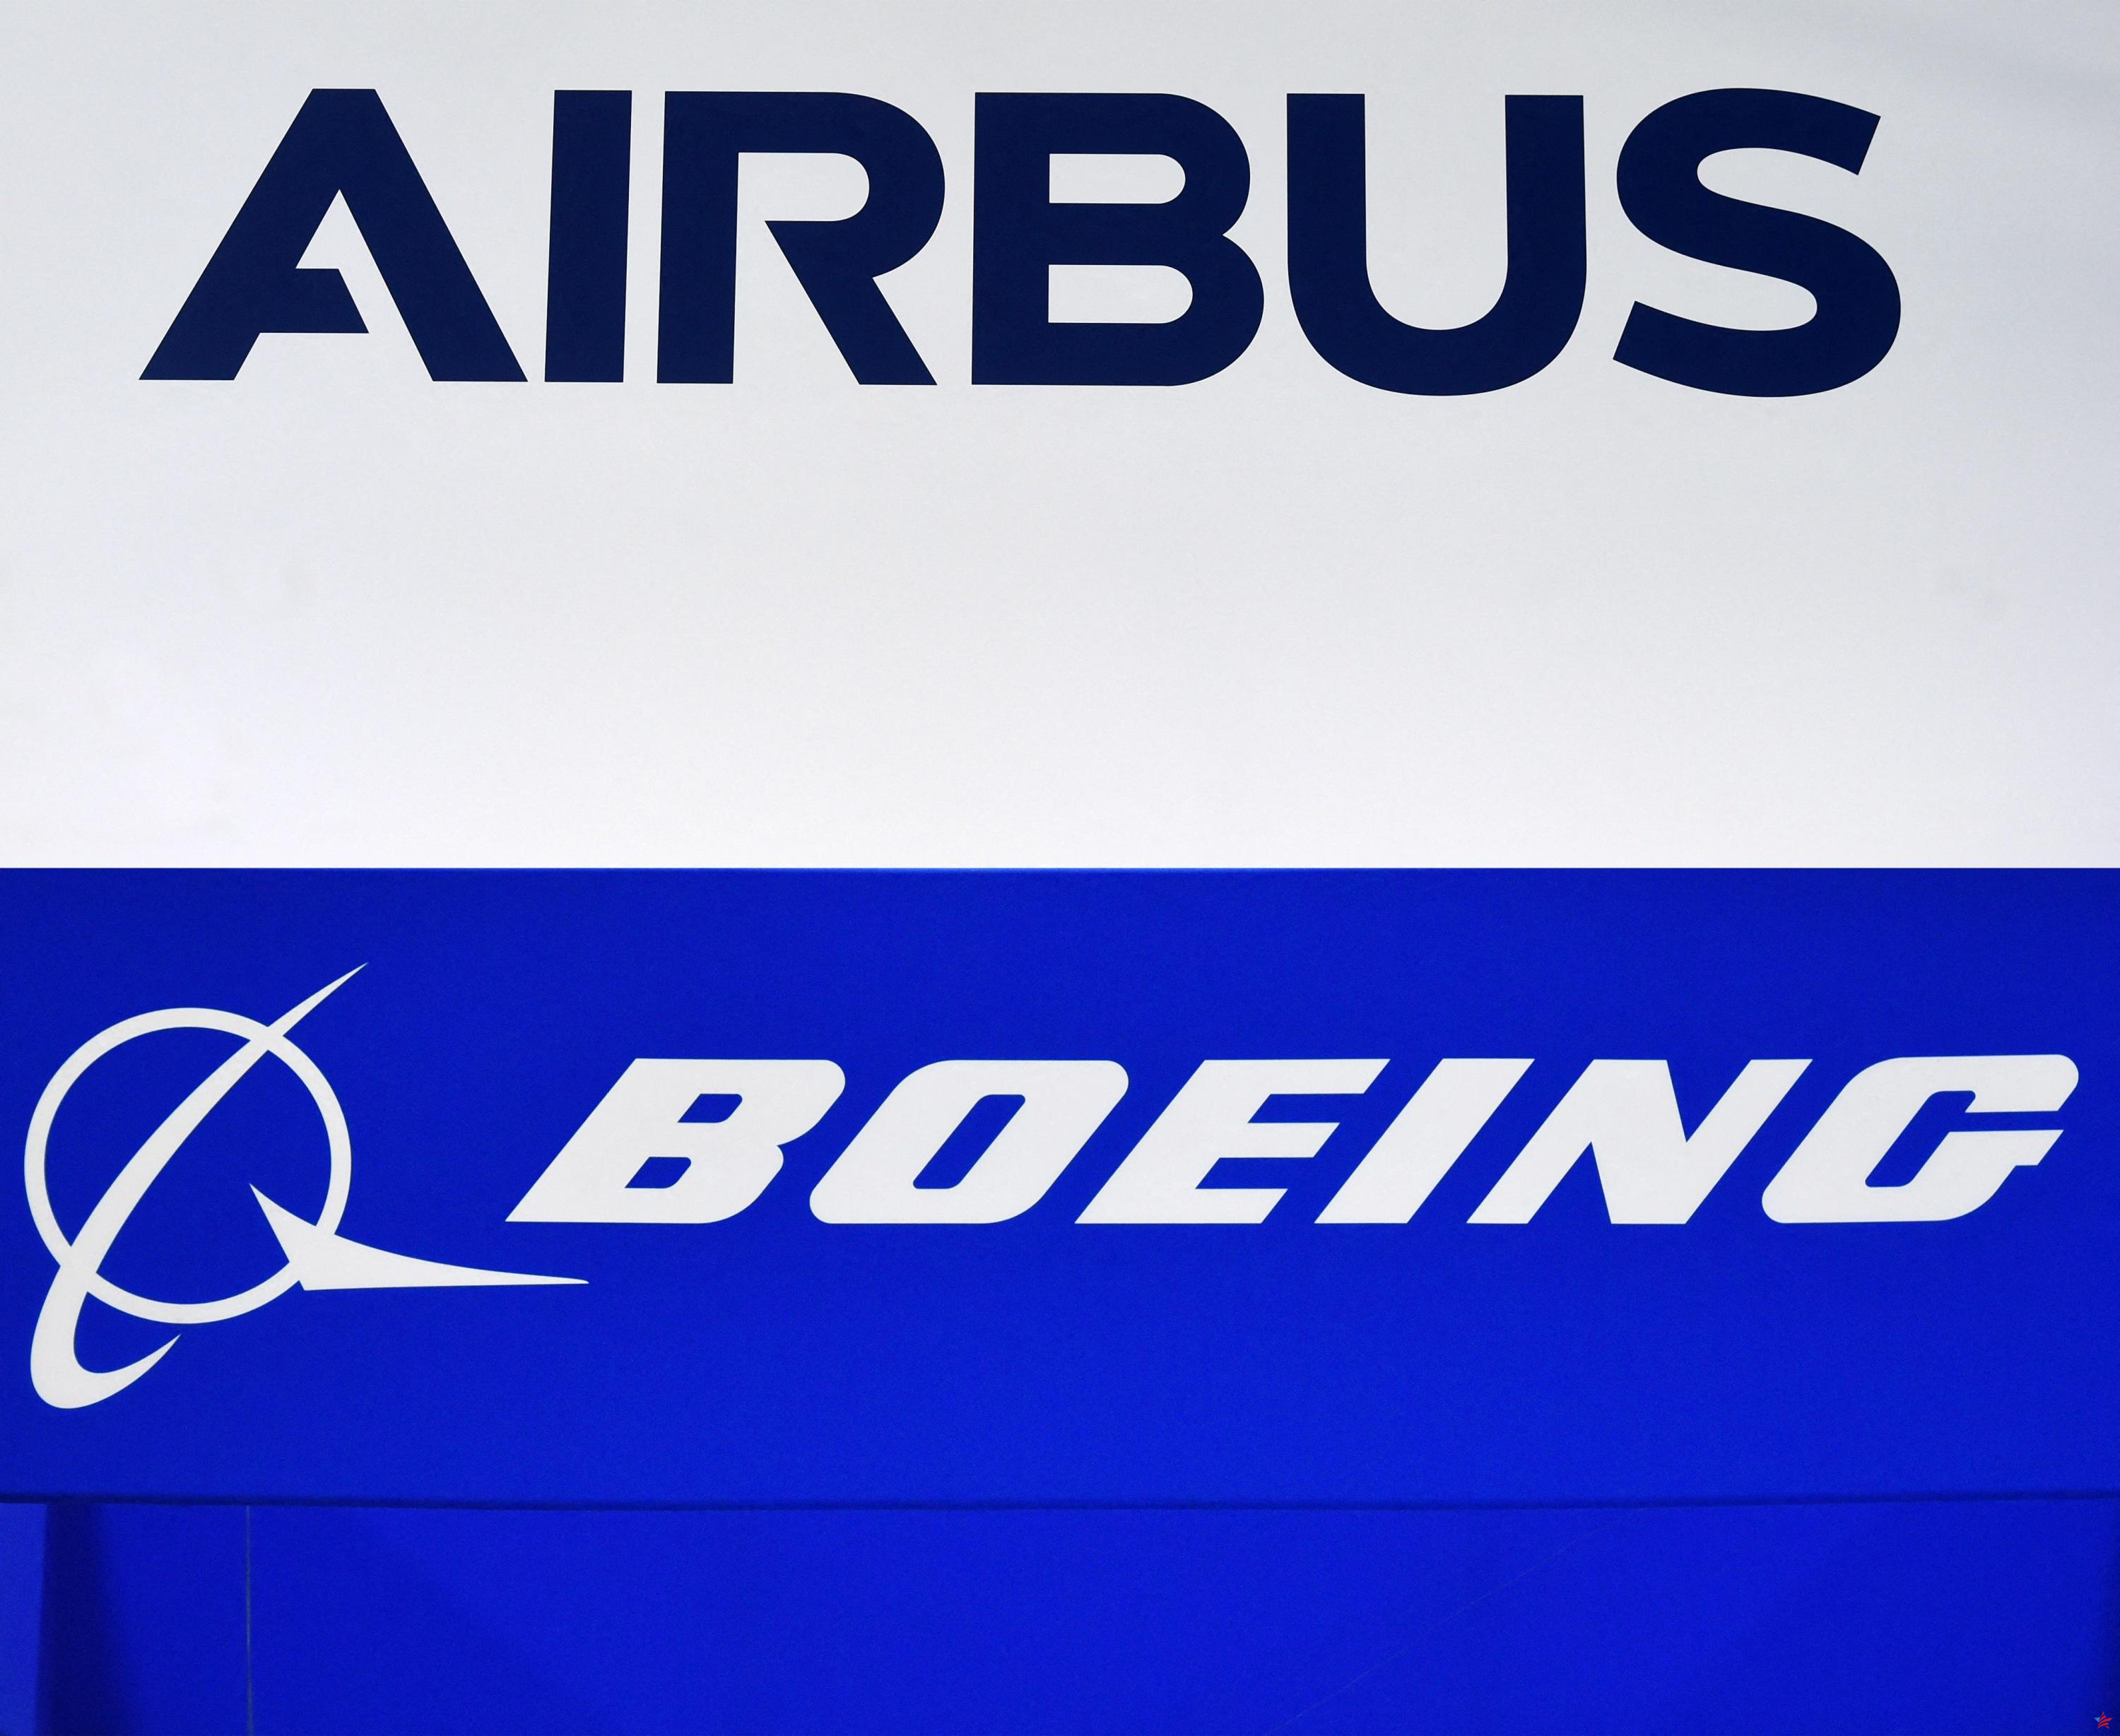 American Airlines realiza nuevos pedidos a Airbus, Embraer y Boeing, incluidos 85 aviones 737 MAX